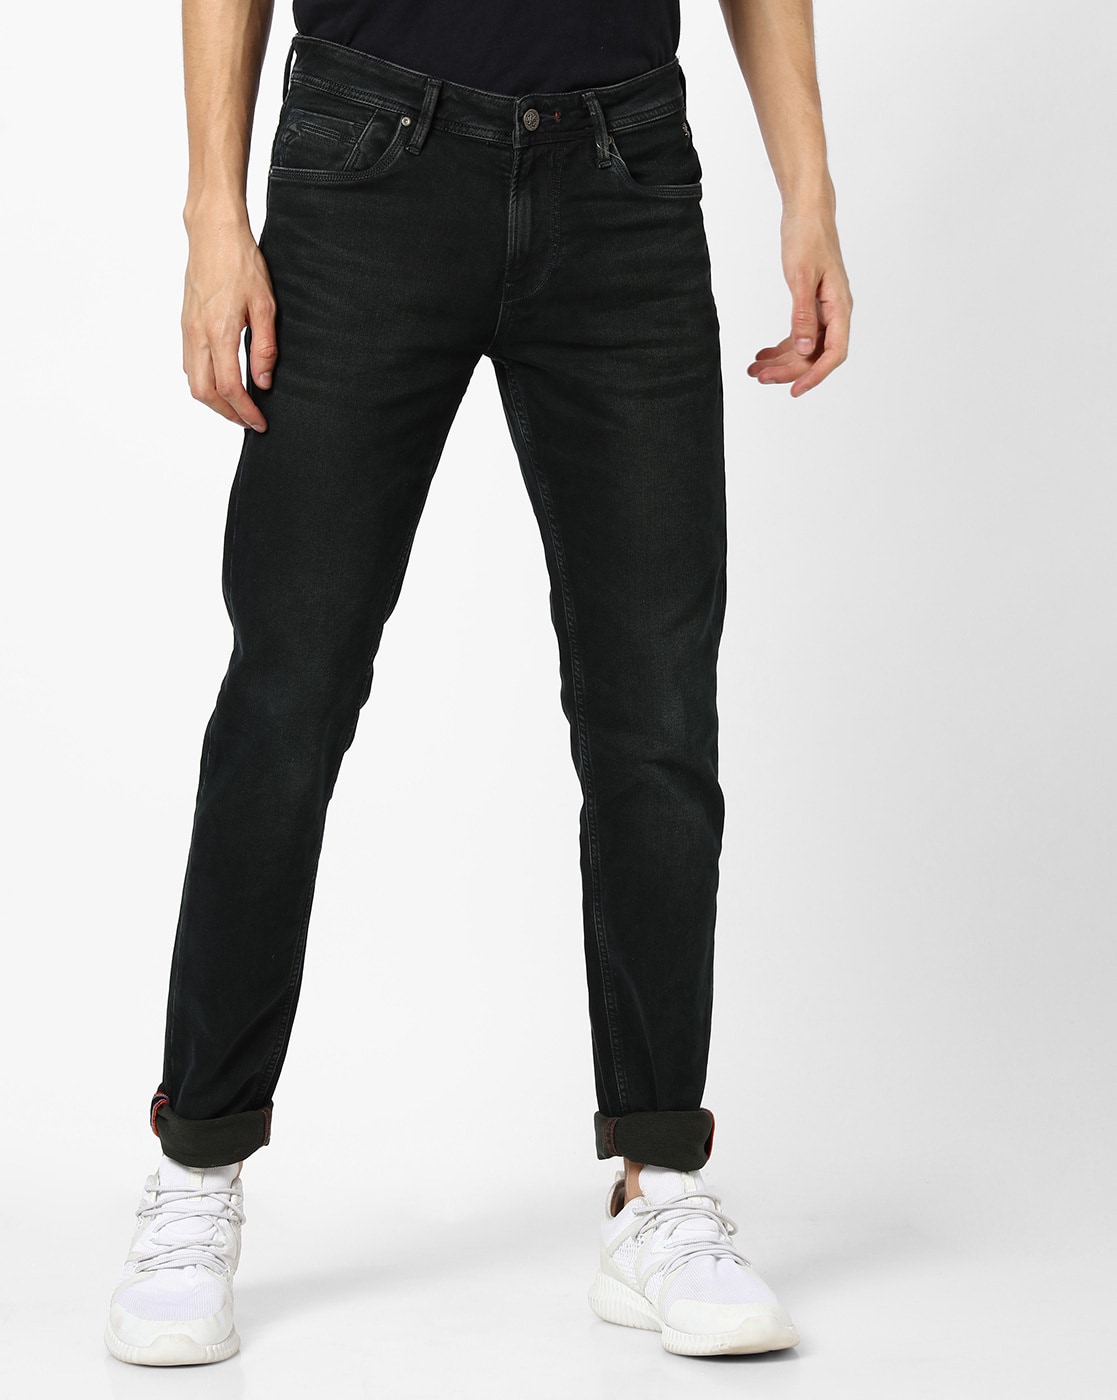 Solid Color Black Skinny Jeans High Stretch Slash Pocket - Temu